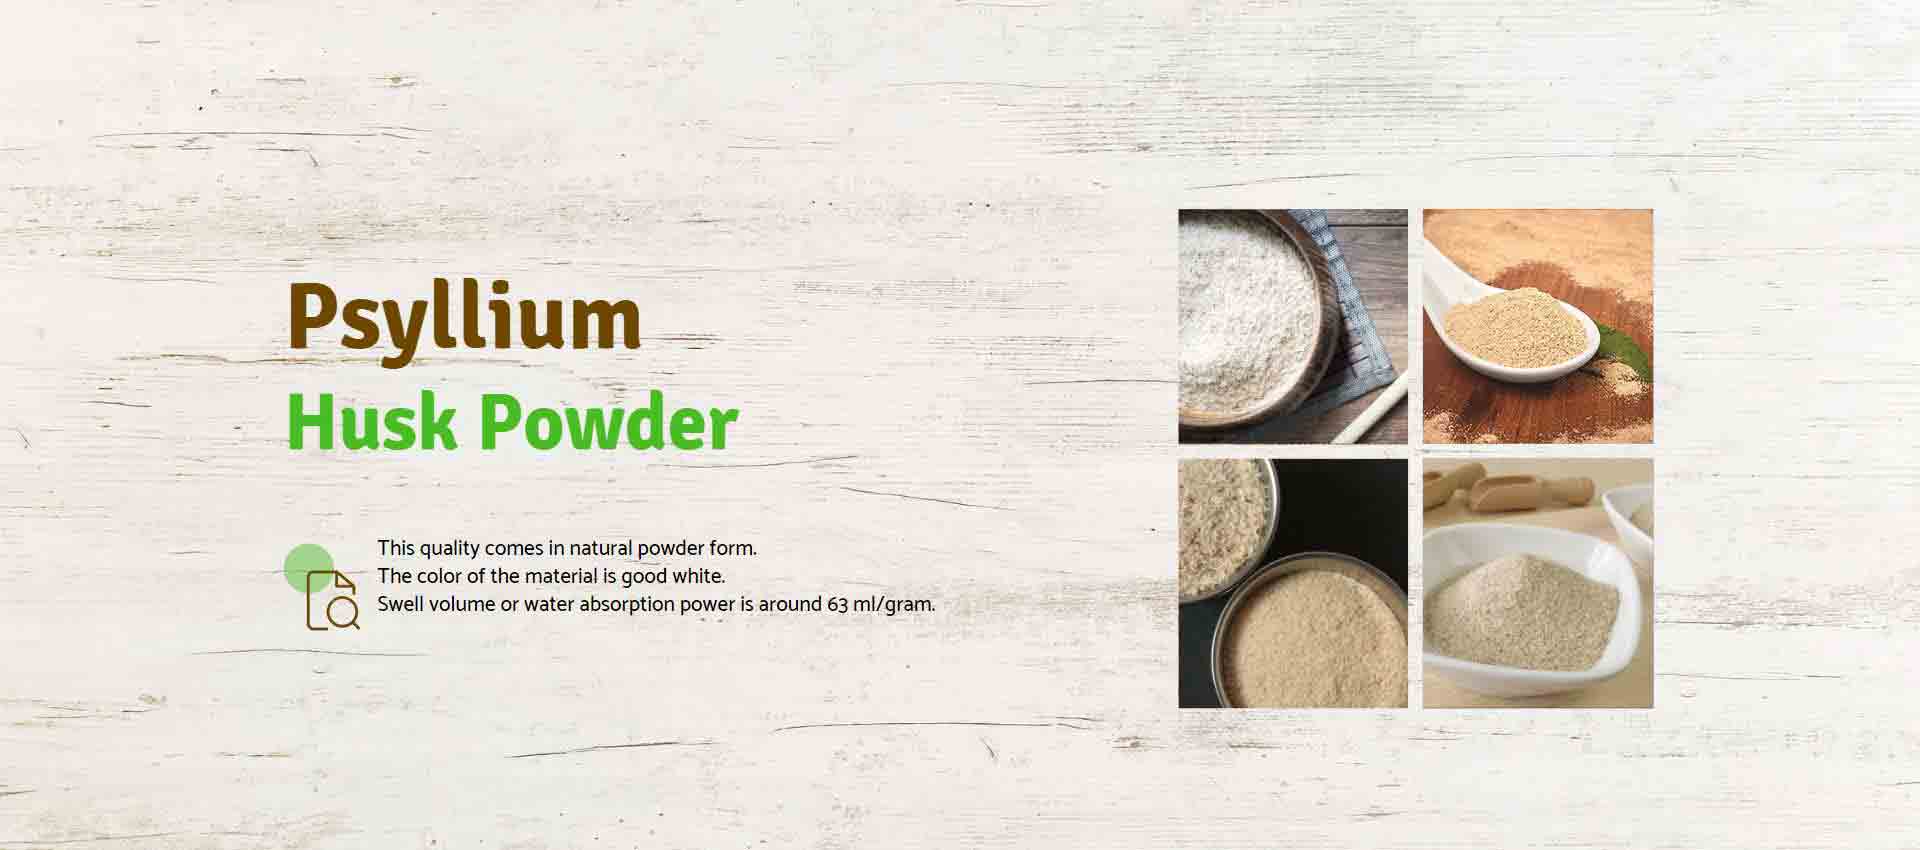 Psyllium Husk Powder Manufacturers in Vietnam